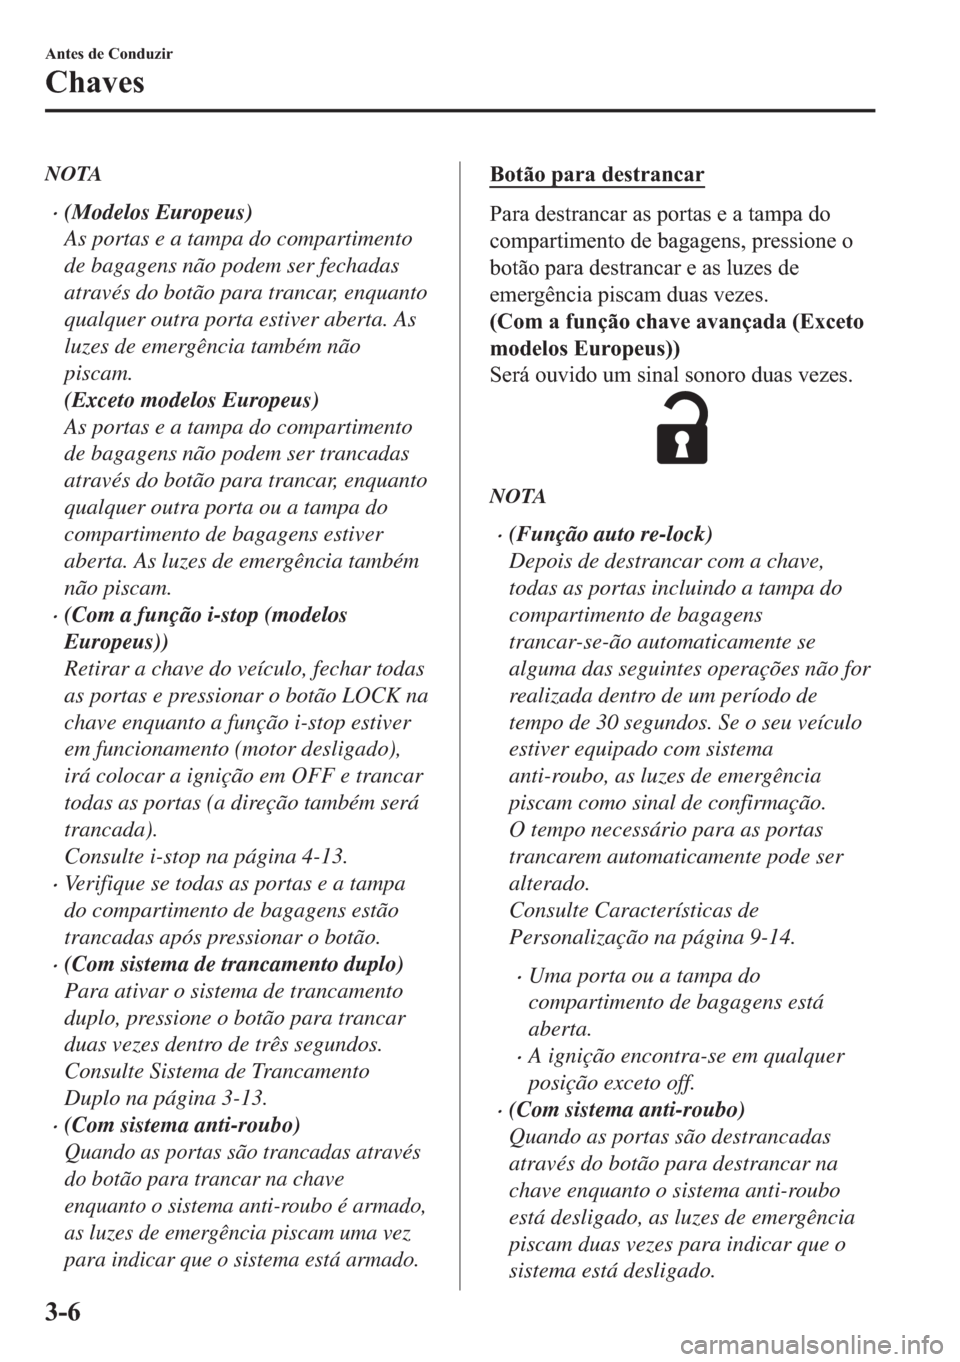 MAZDA MODEL 2 2019  Manual do proprietário (in Portuguese) NOTA
�x(Modelos Europeus)
As portas e a tampa do compartimento
de bagagens não podem ser fechadas
através do botão para trancar, enquanto
qualquer outra porta estiver aberta. As
luzes de emergênci